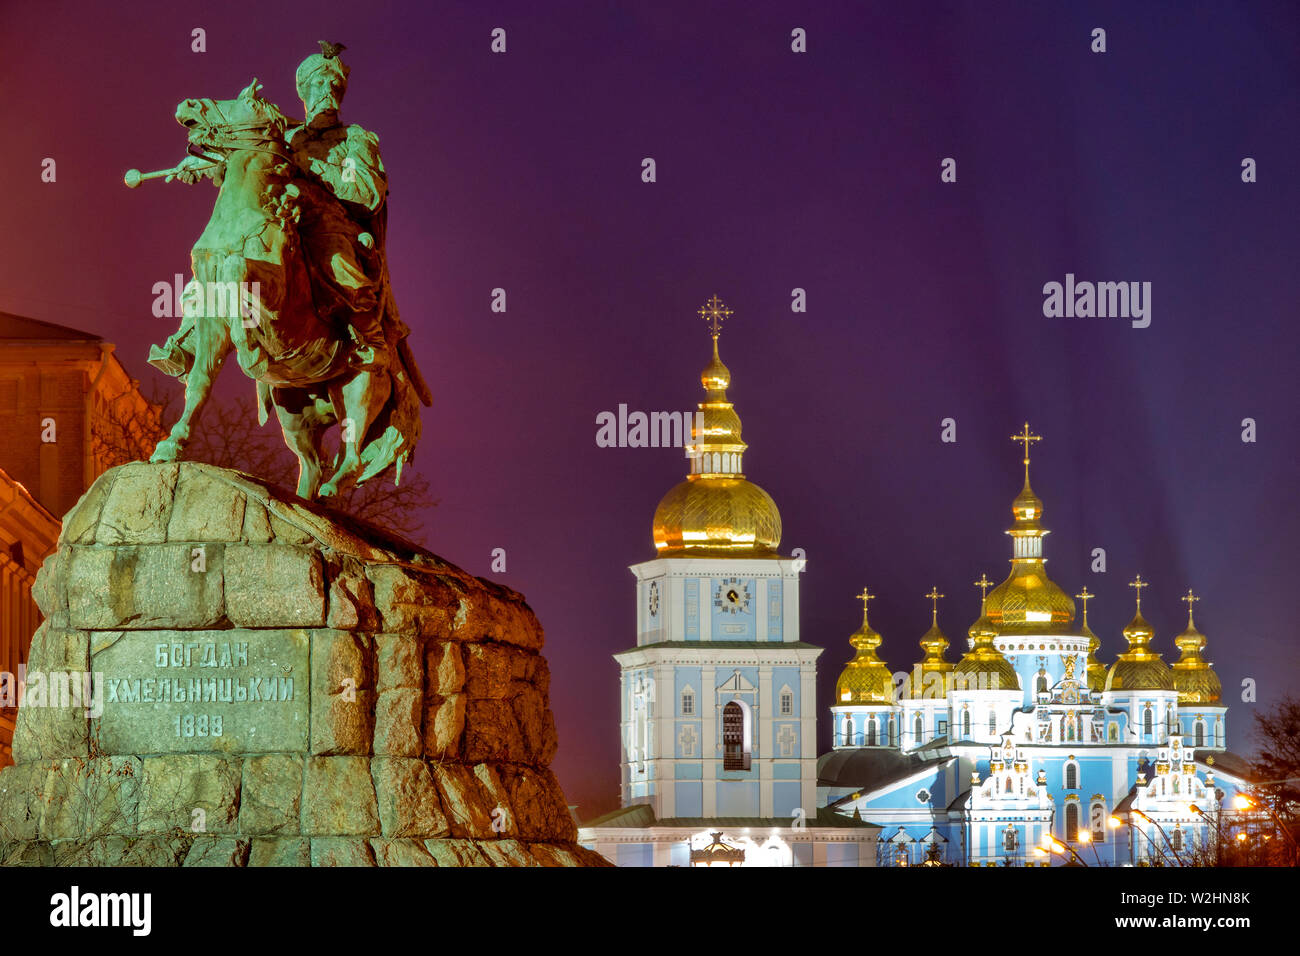 Bohdan Khmelnytsky Monument and the St. Michael's Golden-Domed Monastery, Kiev, Ukraine Stock Photo